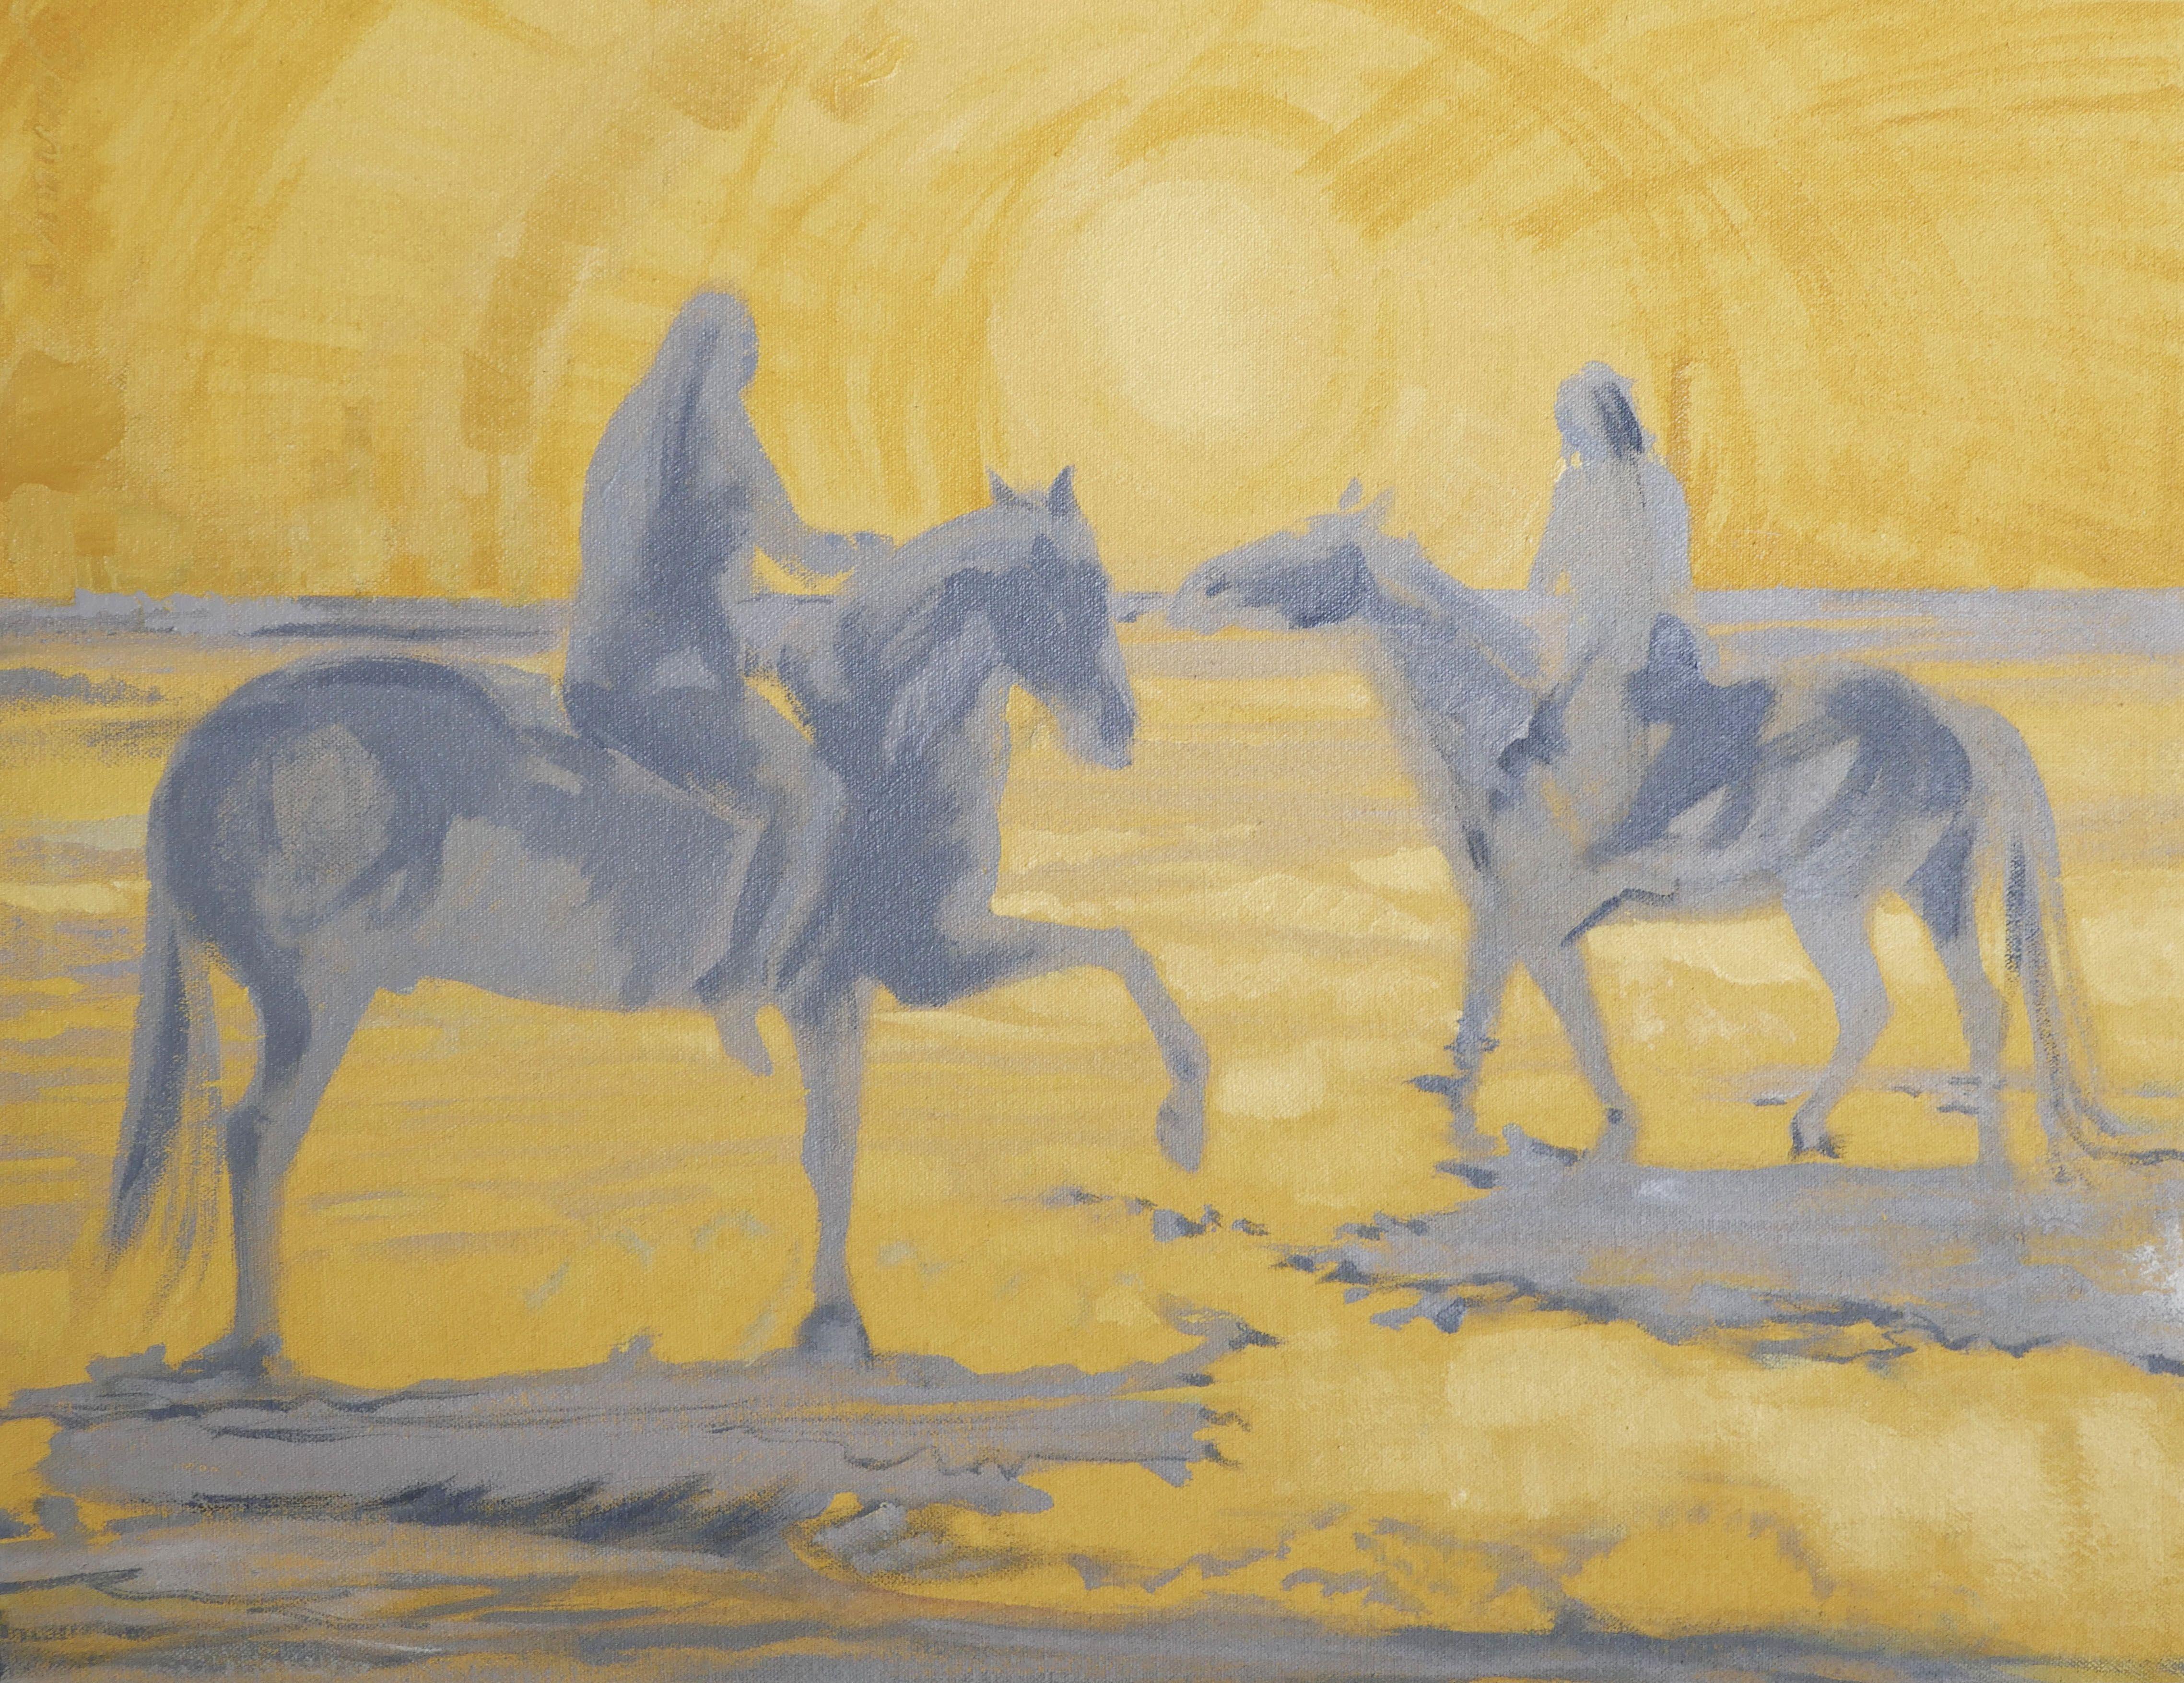 Salt Dancers, Painting, Acrylic on Canvas